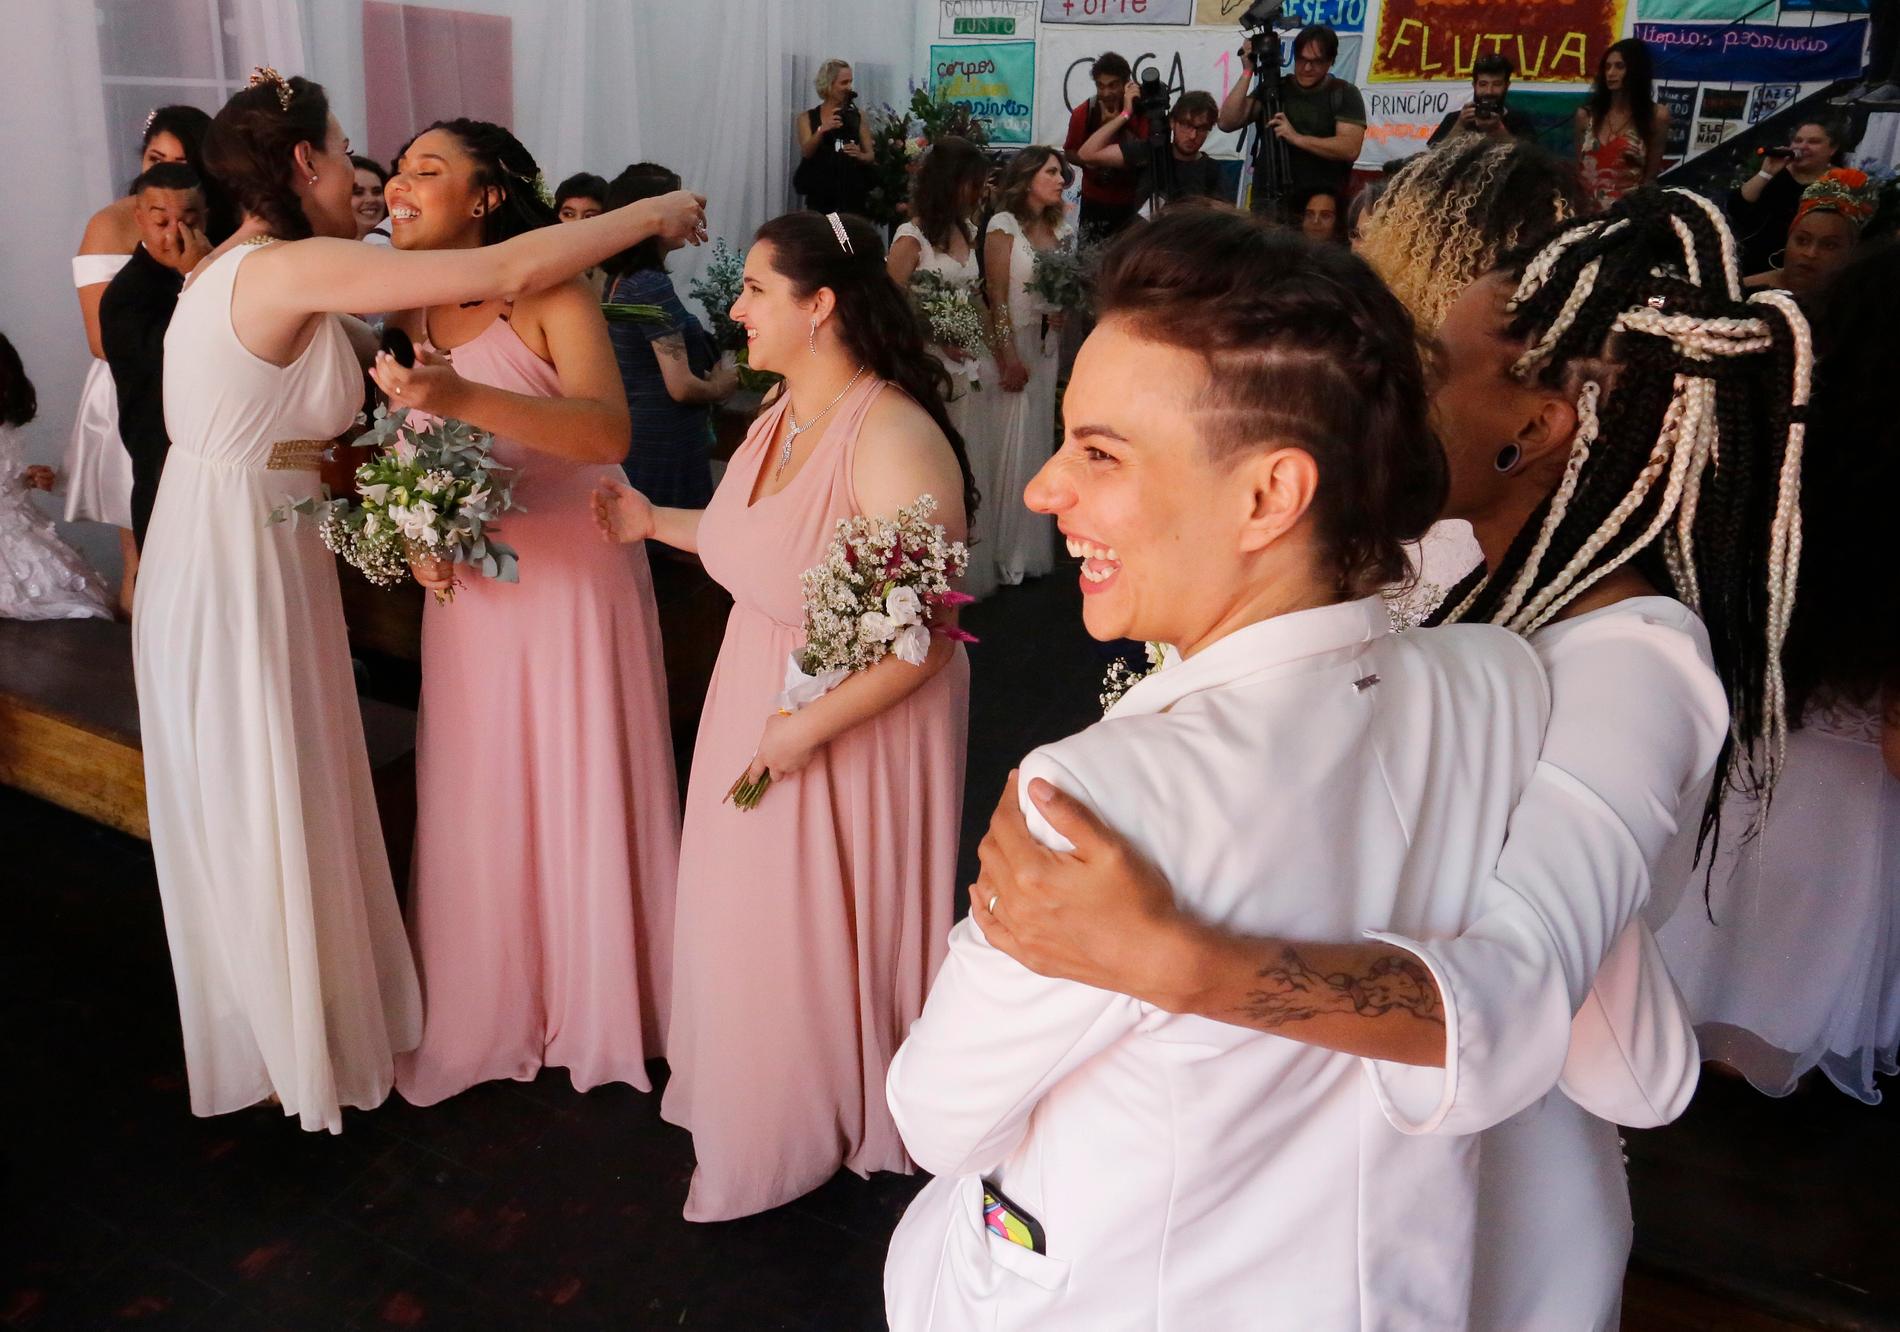 Samtidigt som det finns en blomstrande gayscen på en del håll är hbtq-personer utsatta i Brasilien. Här firar gaypar massbröllop i São Paulo vid ett evenemang i fjol.